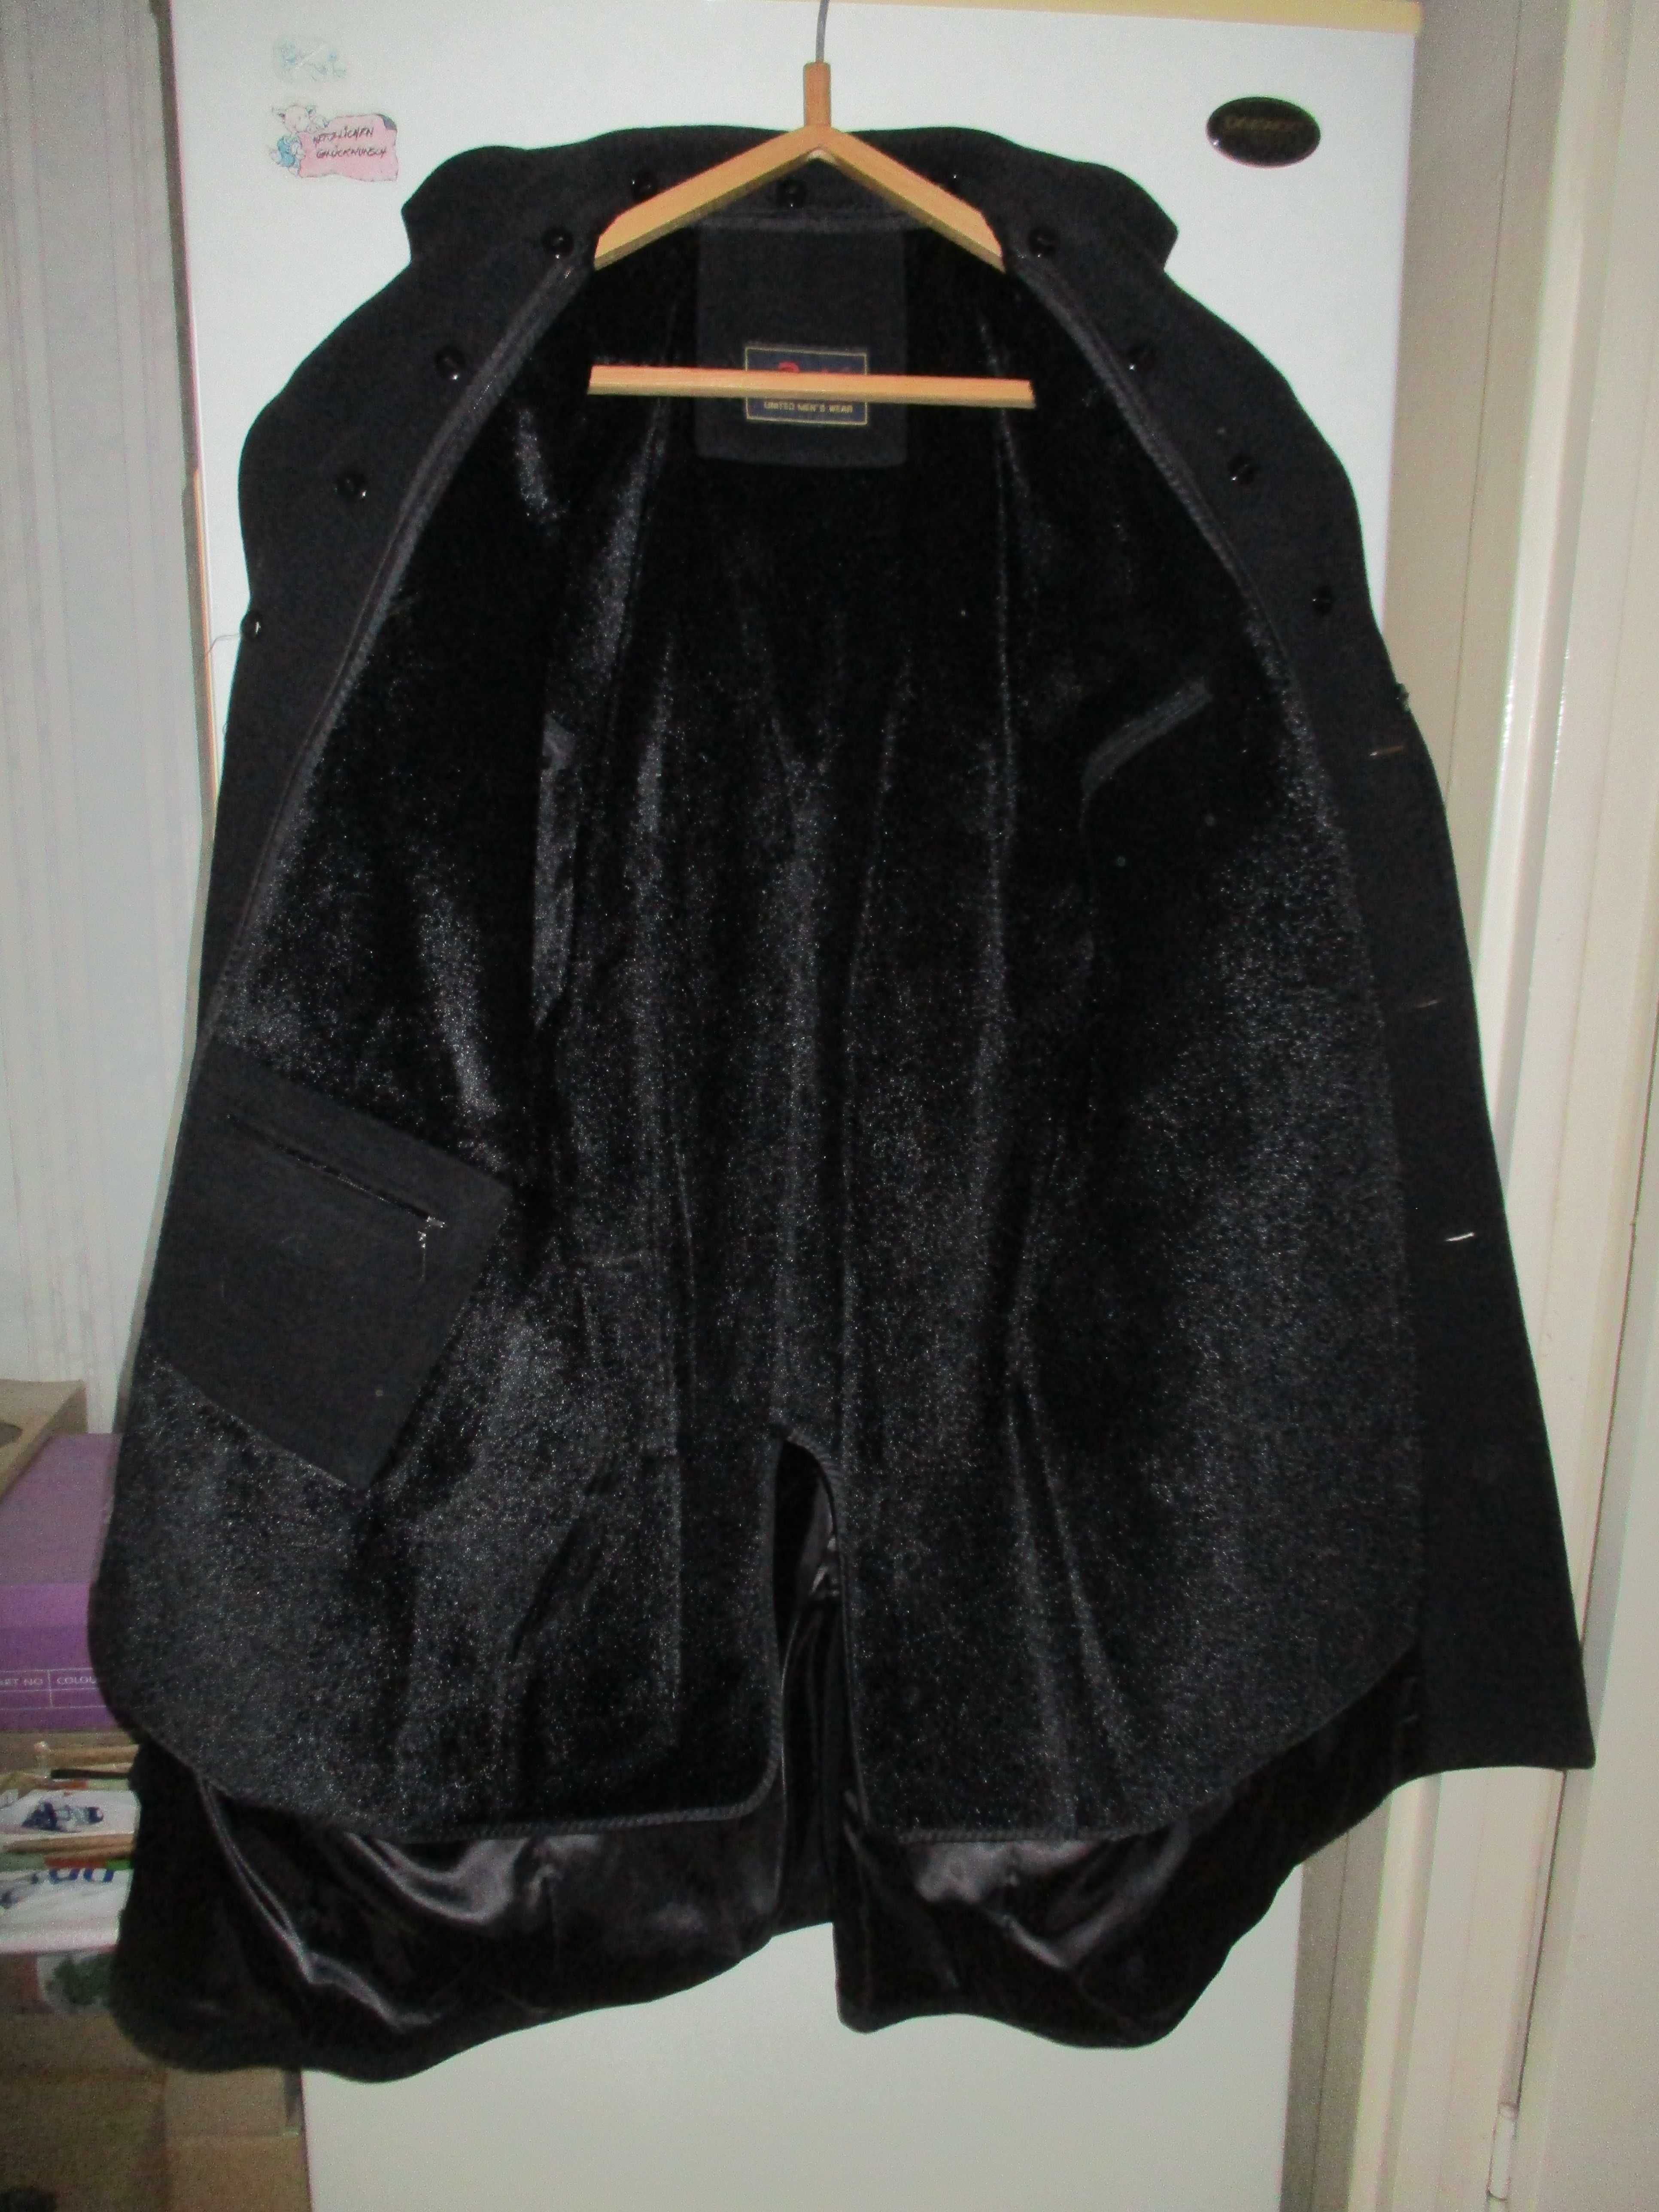 пальто мужское драповое на подстежке размер 48-50